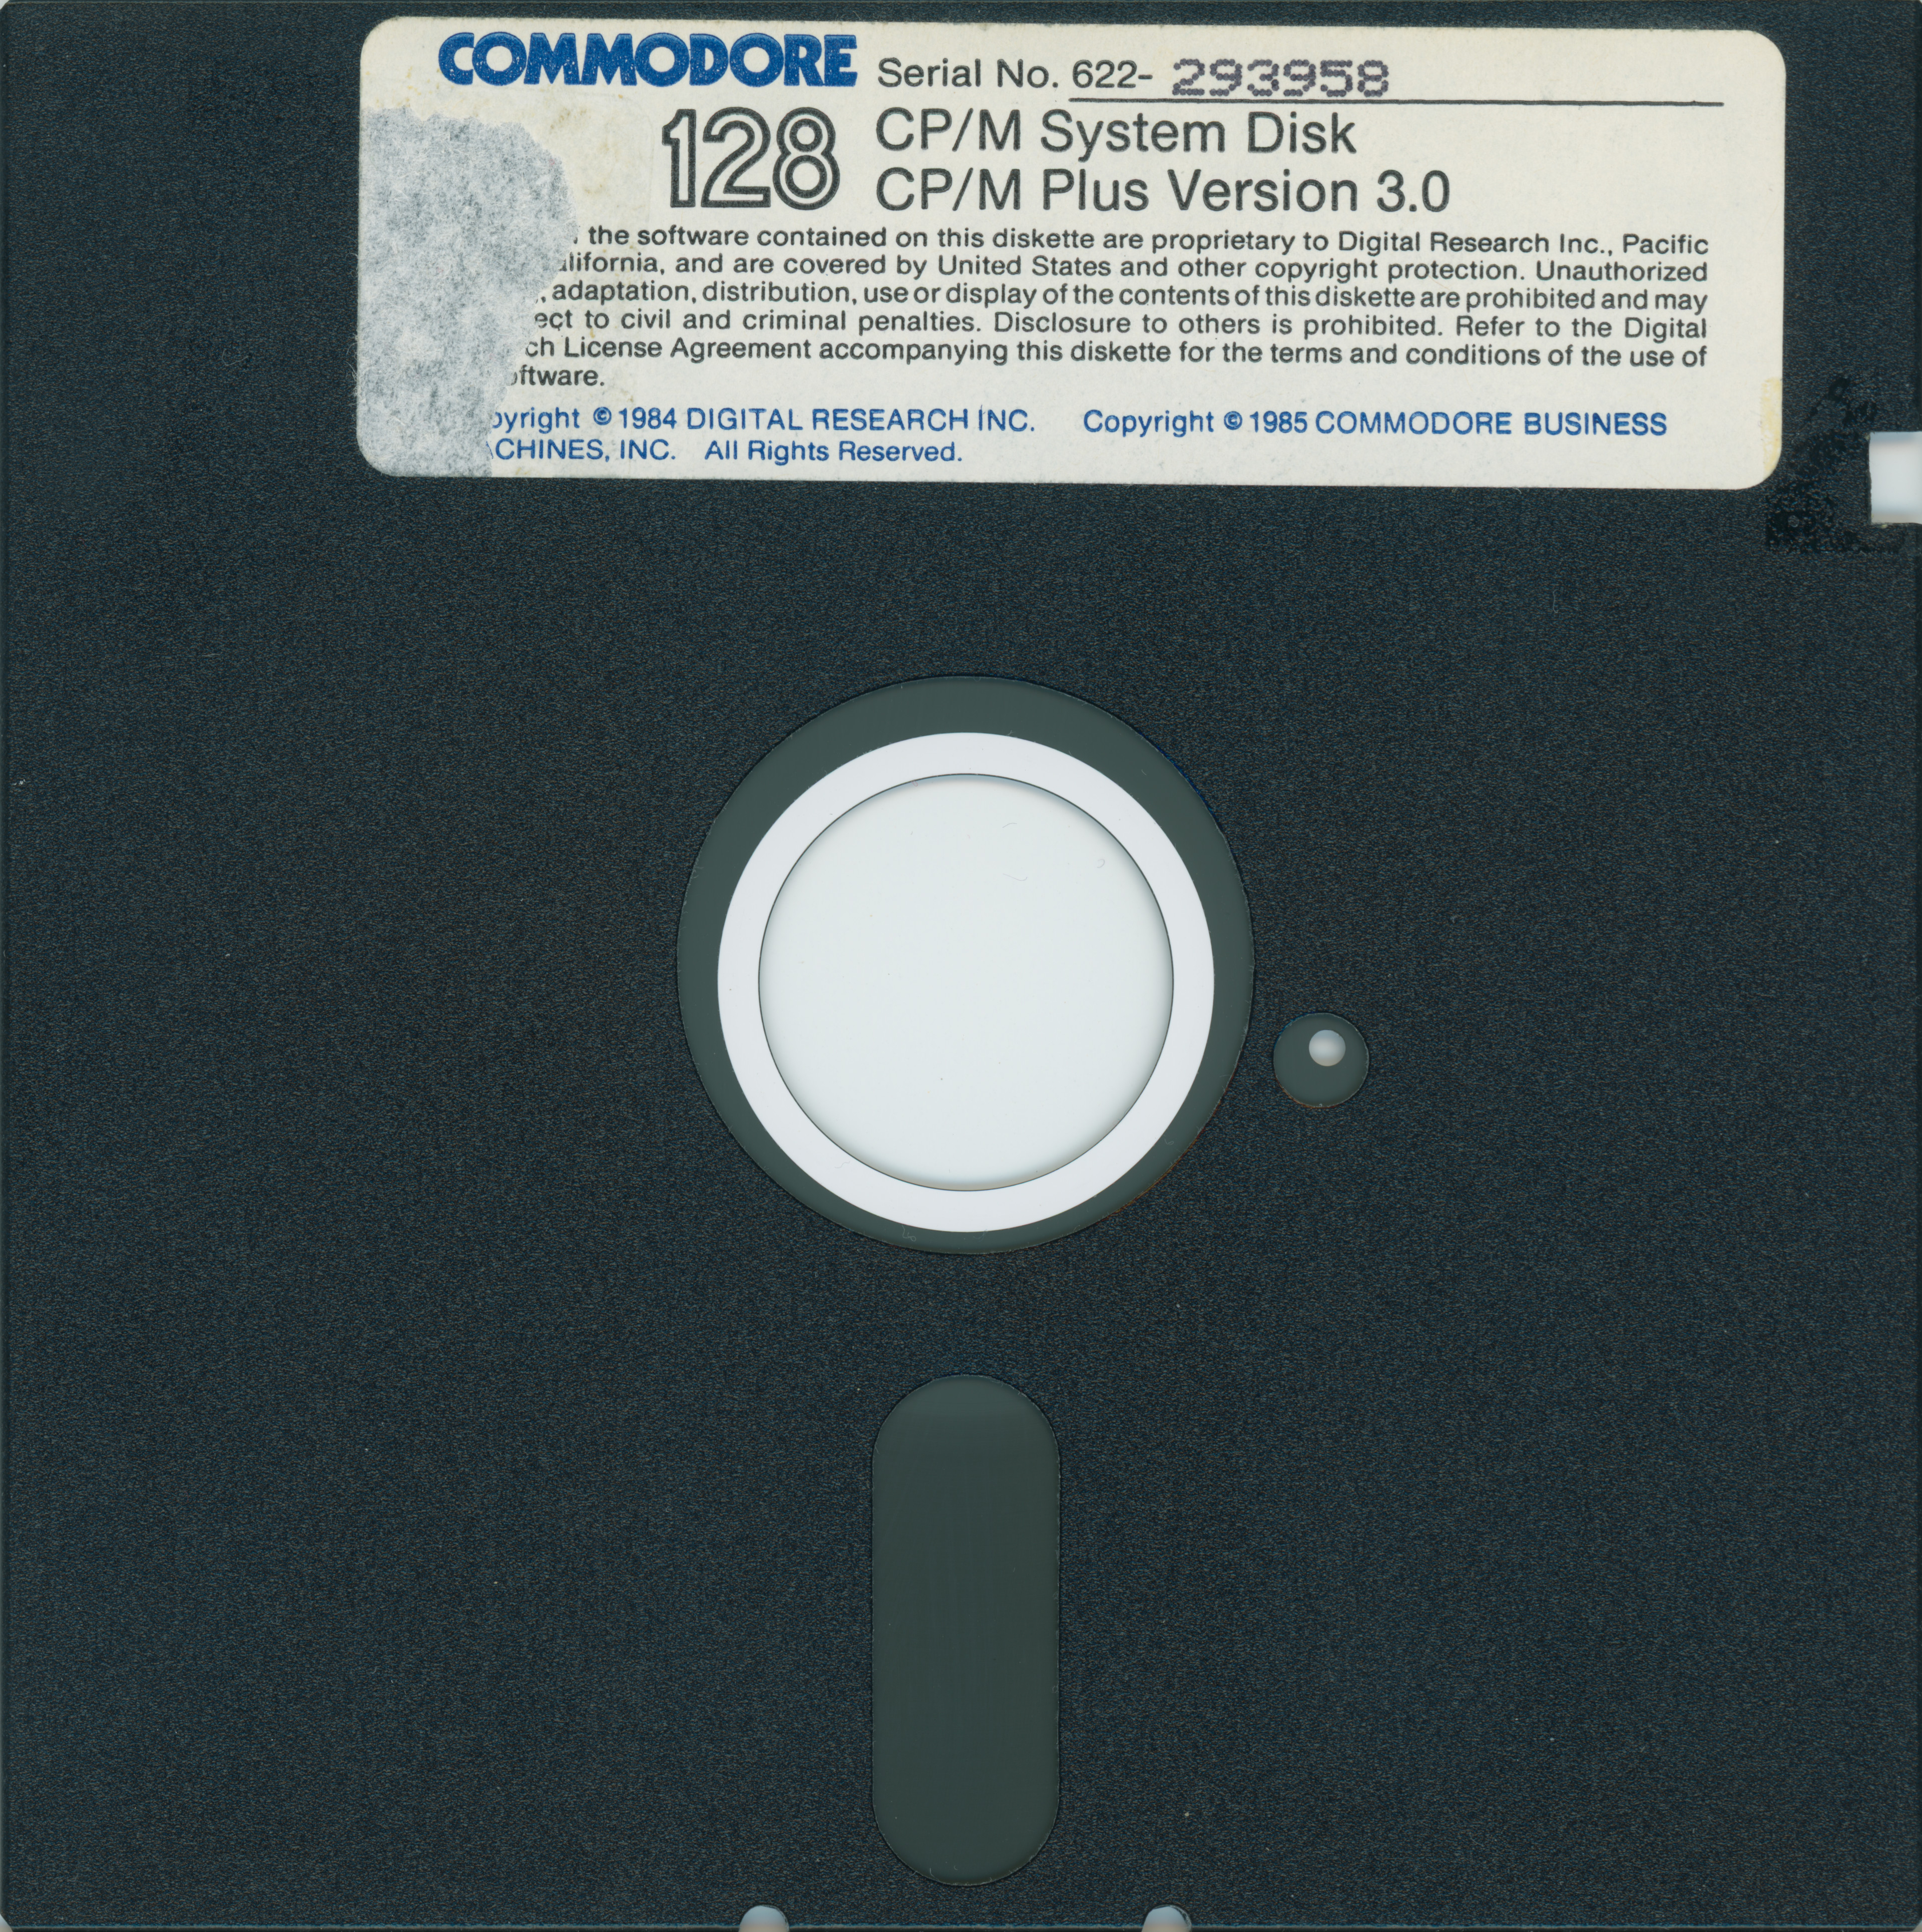 Commodore Commodore 128 CP/M Plus Version 3.0 Source & Model 1541 Demo Disk 1985 Y430 